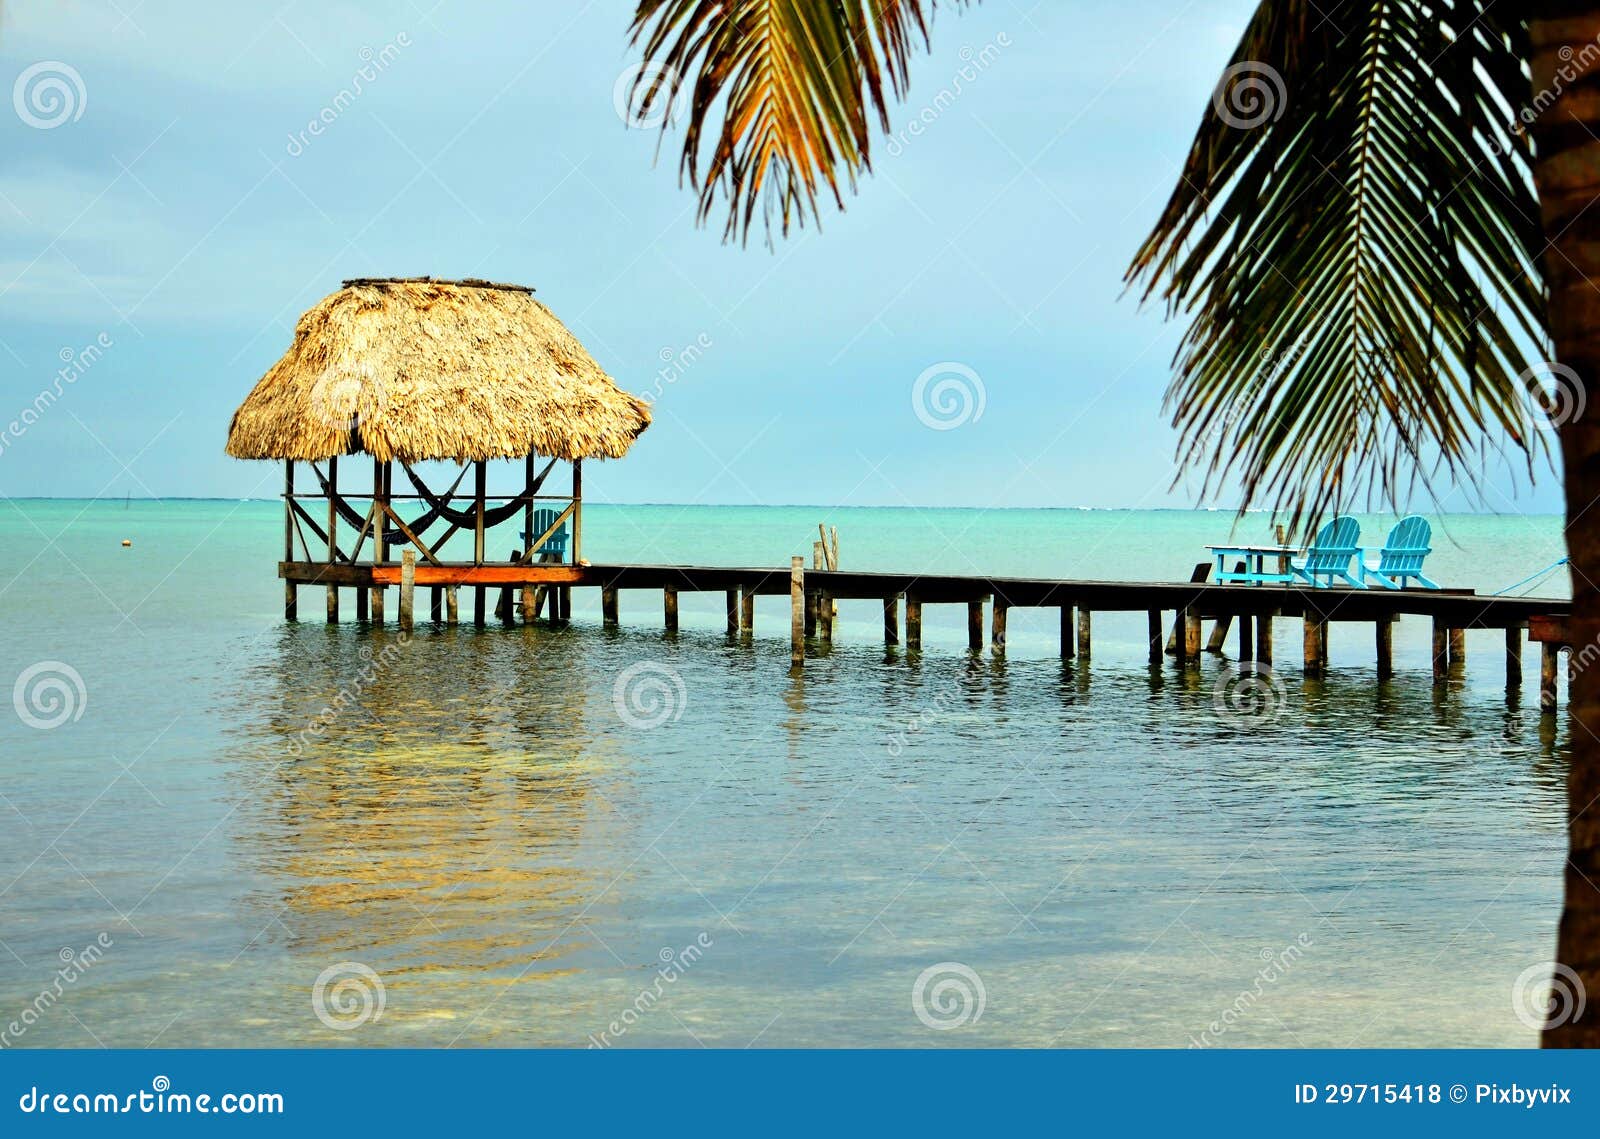 caribbean palapa dock and hammocks